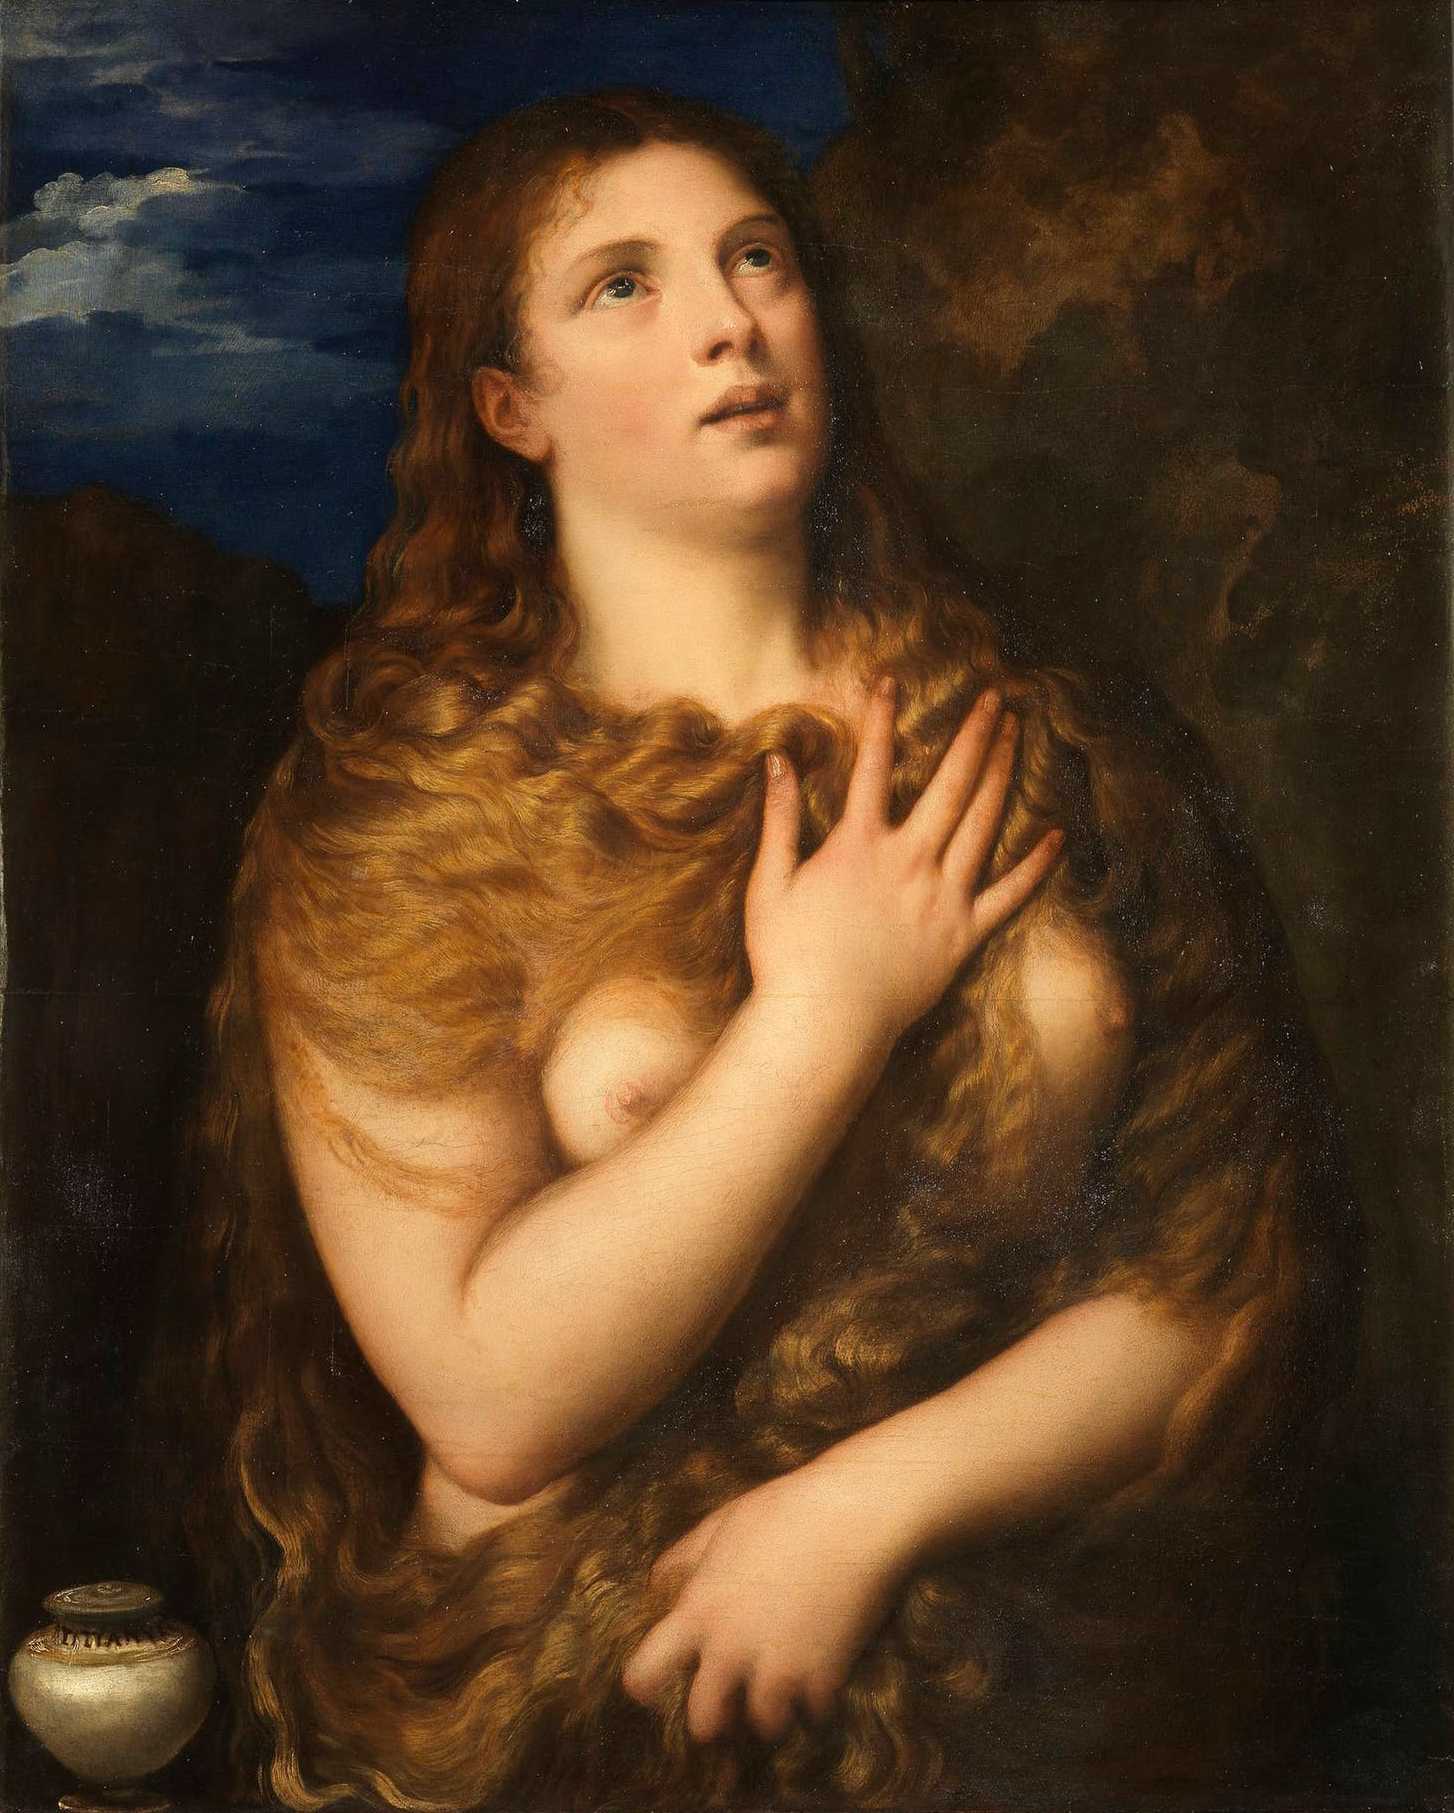 Penitent Magdalene (Titian, 1531)